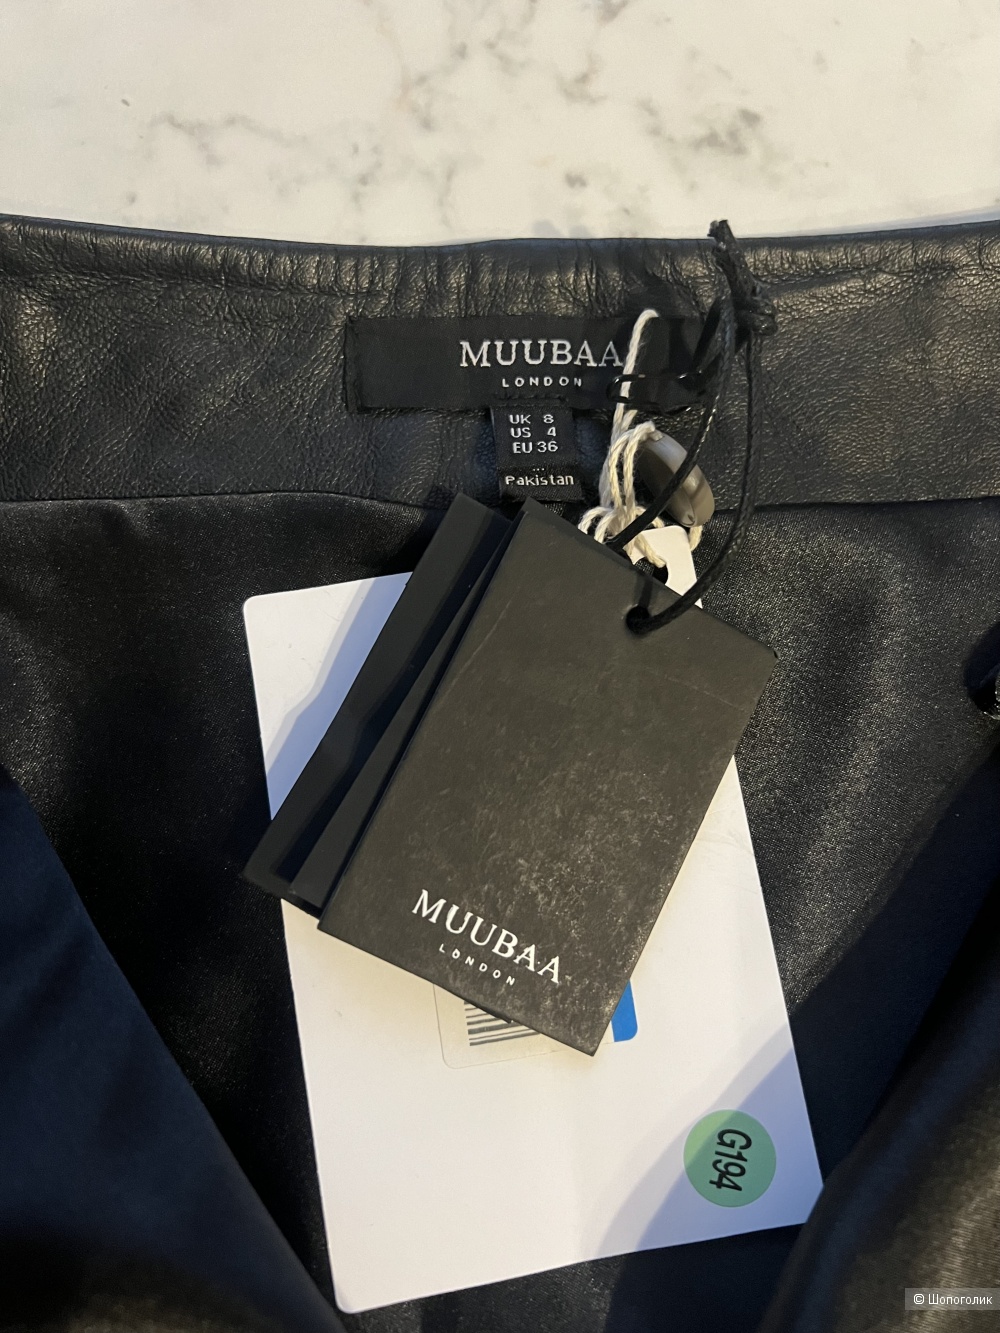 Кожаная юбка MUUBAA, размер 8 UK